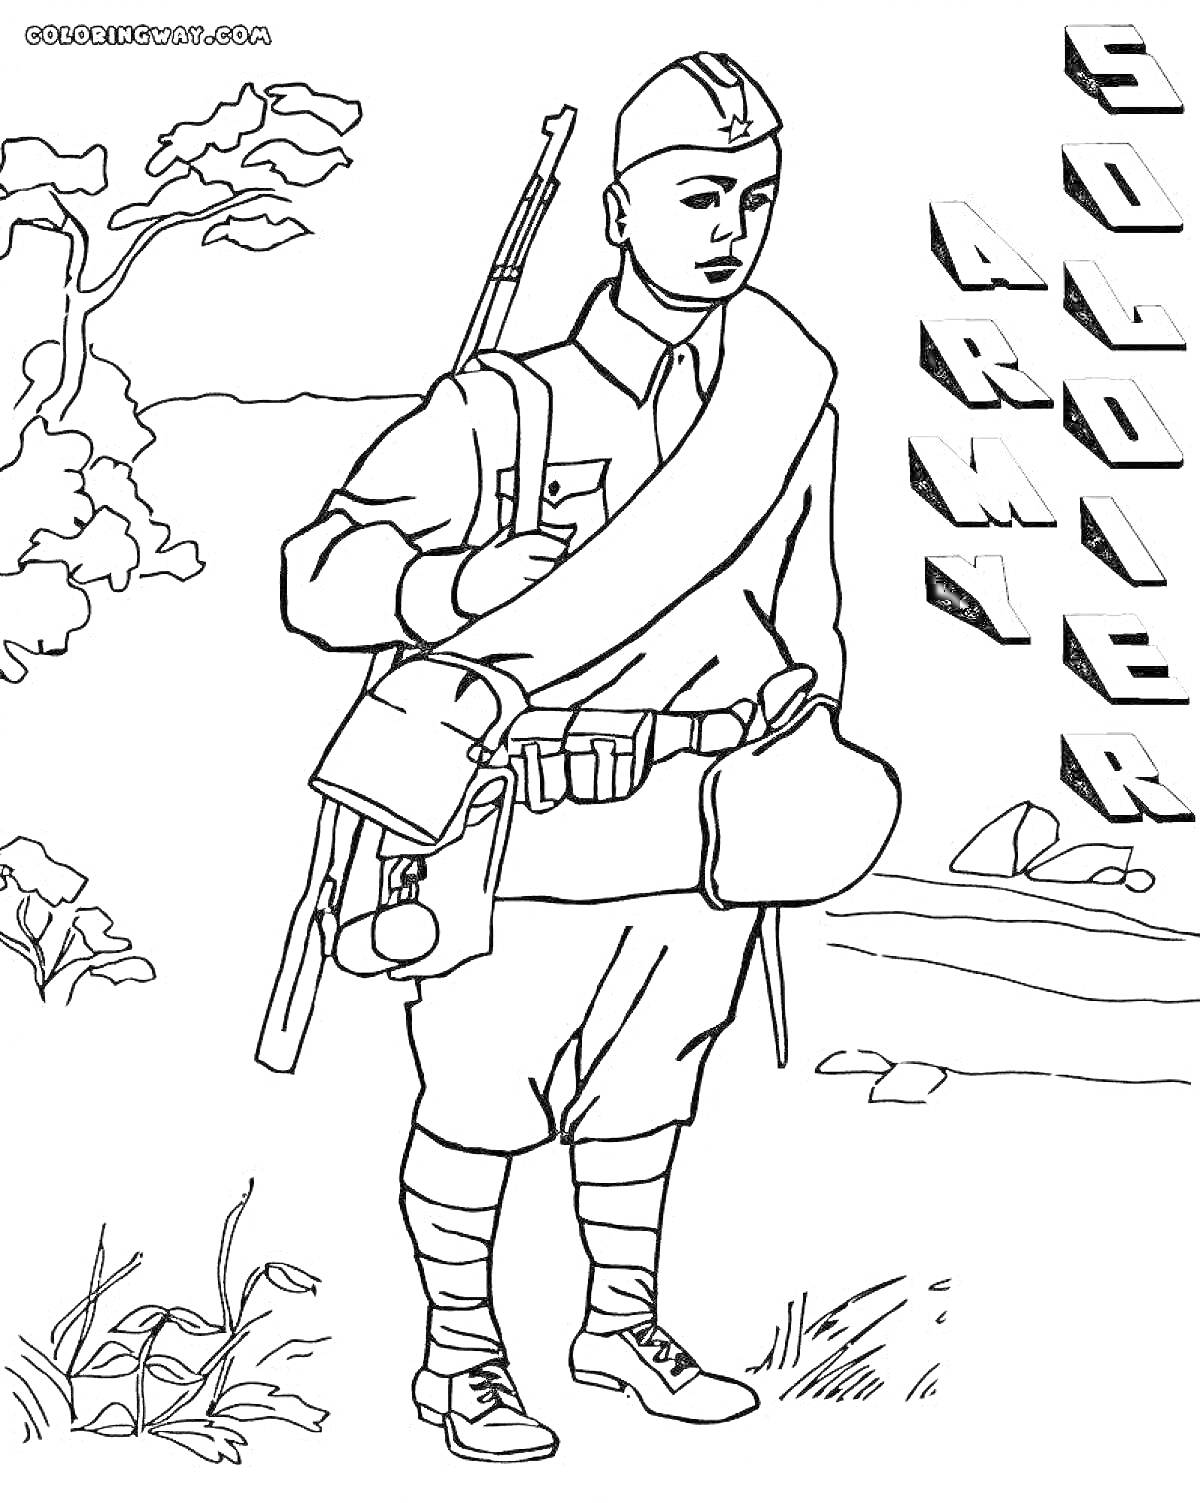 Раскраска Солдат в форме с ружьем в руках на фоне деревьев и поля, надписи 